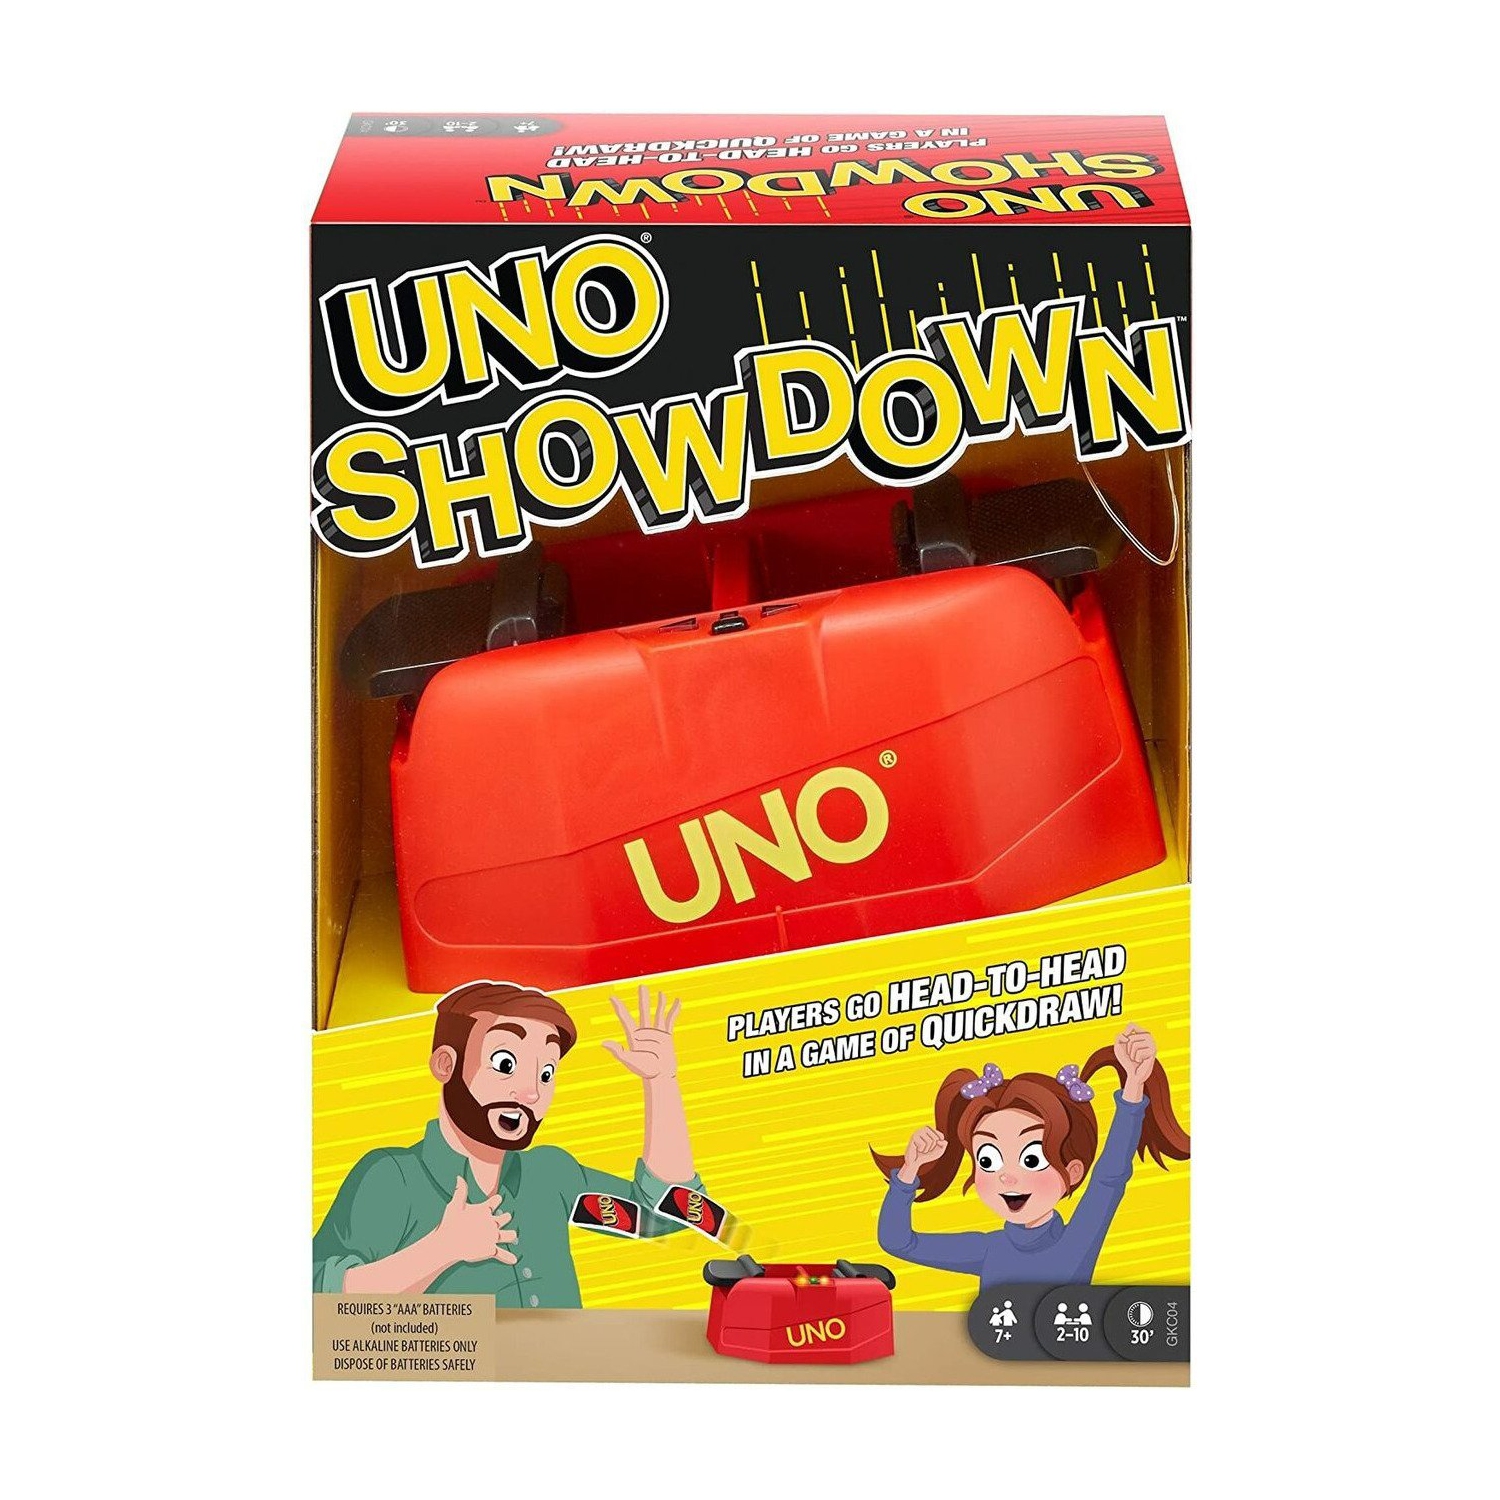 UNO Showdown Quick Draw Family Card Game with 112 Cards & UNO Showdown Unit